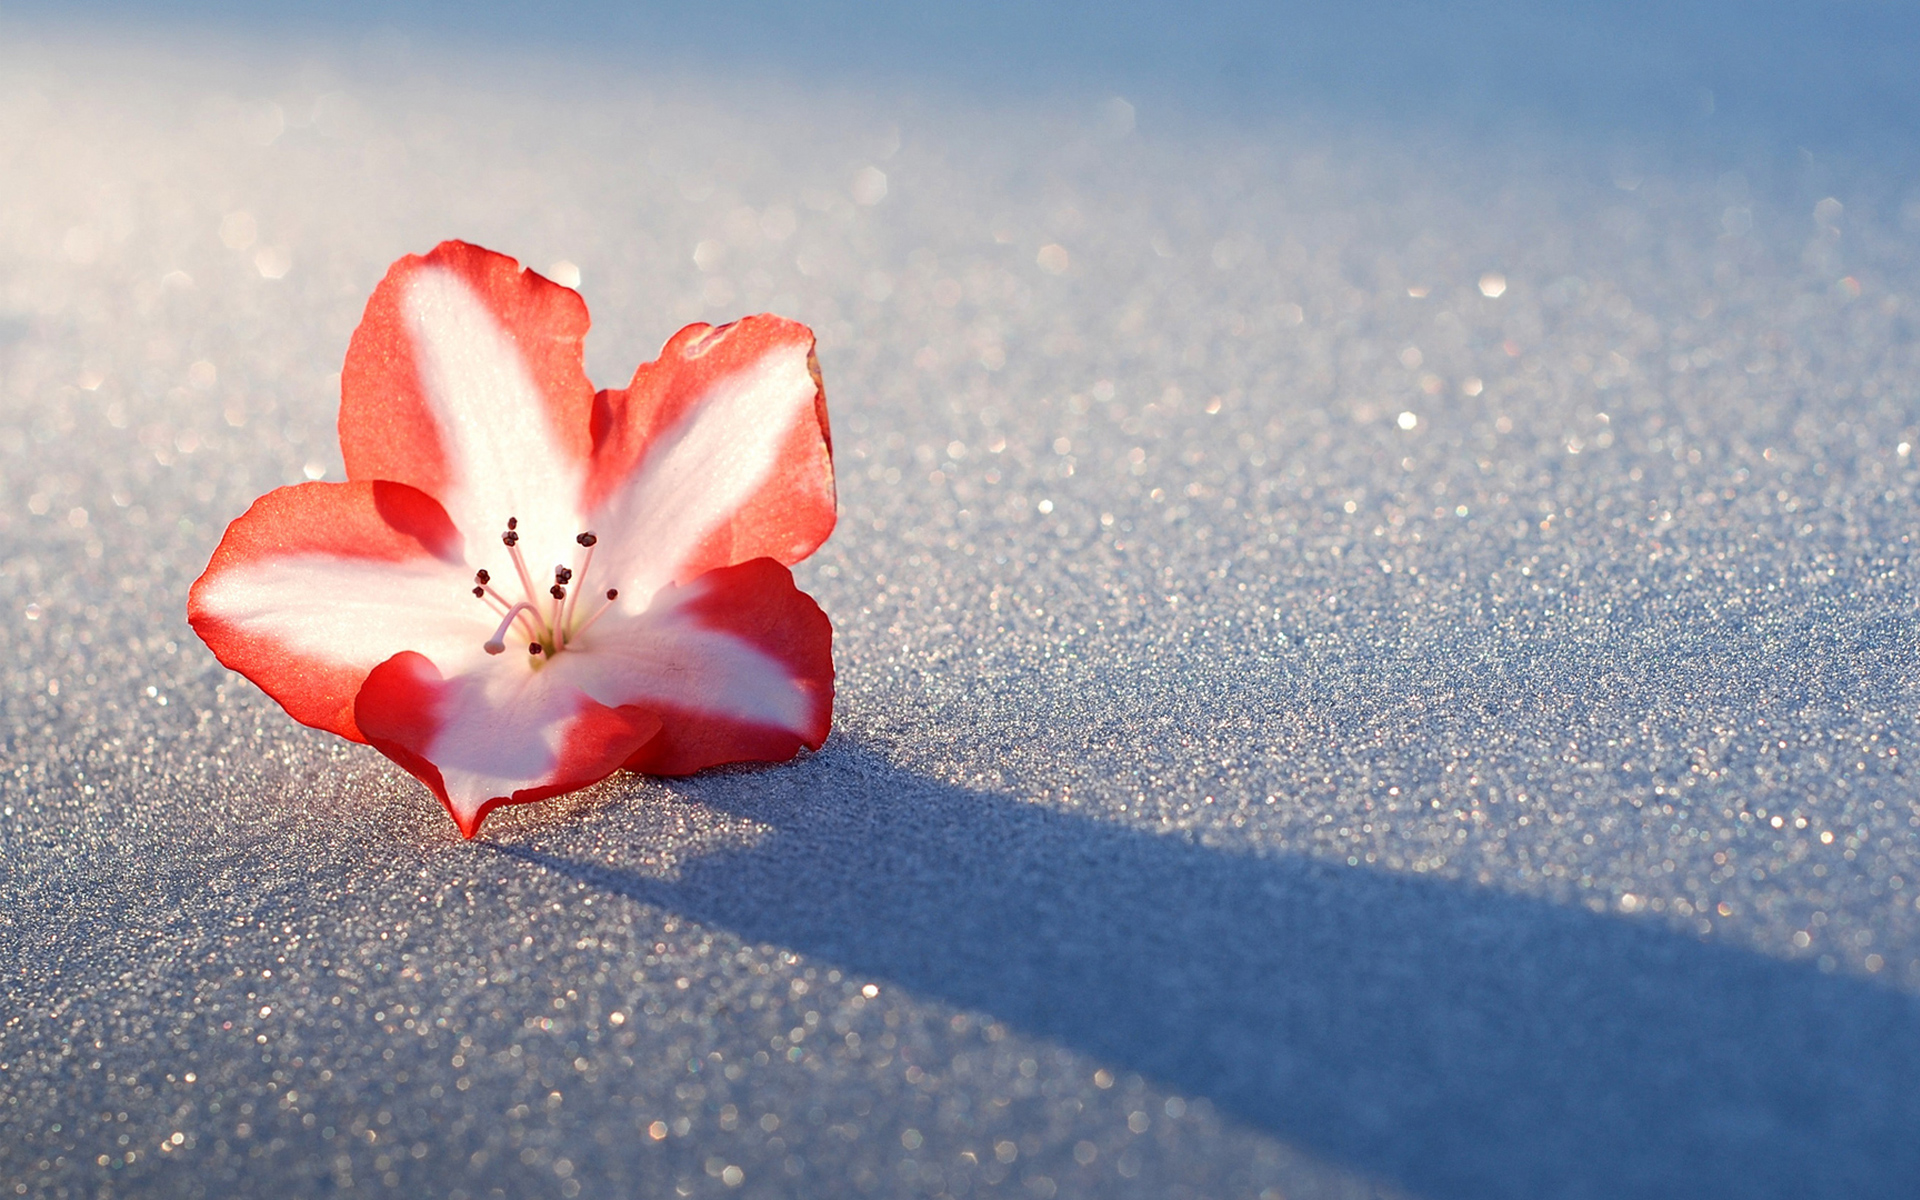 Цветы на фоне снега